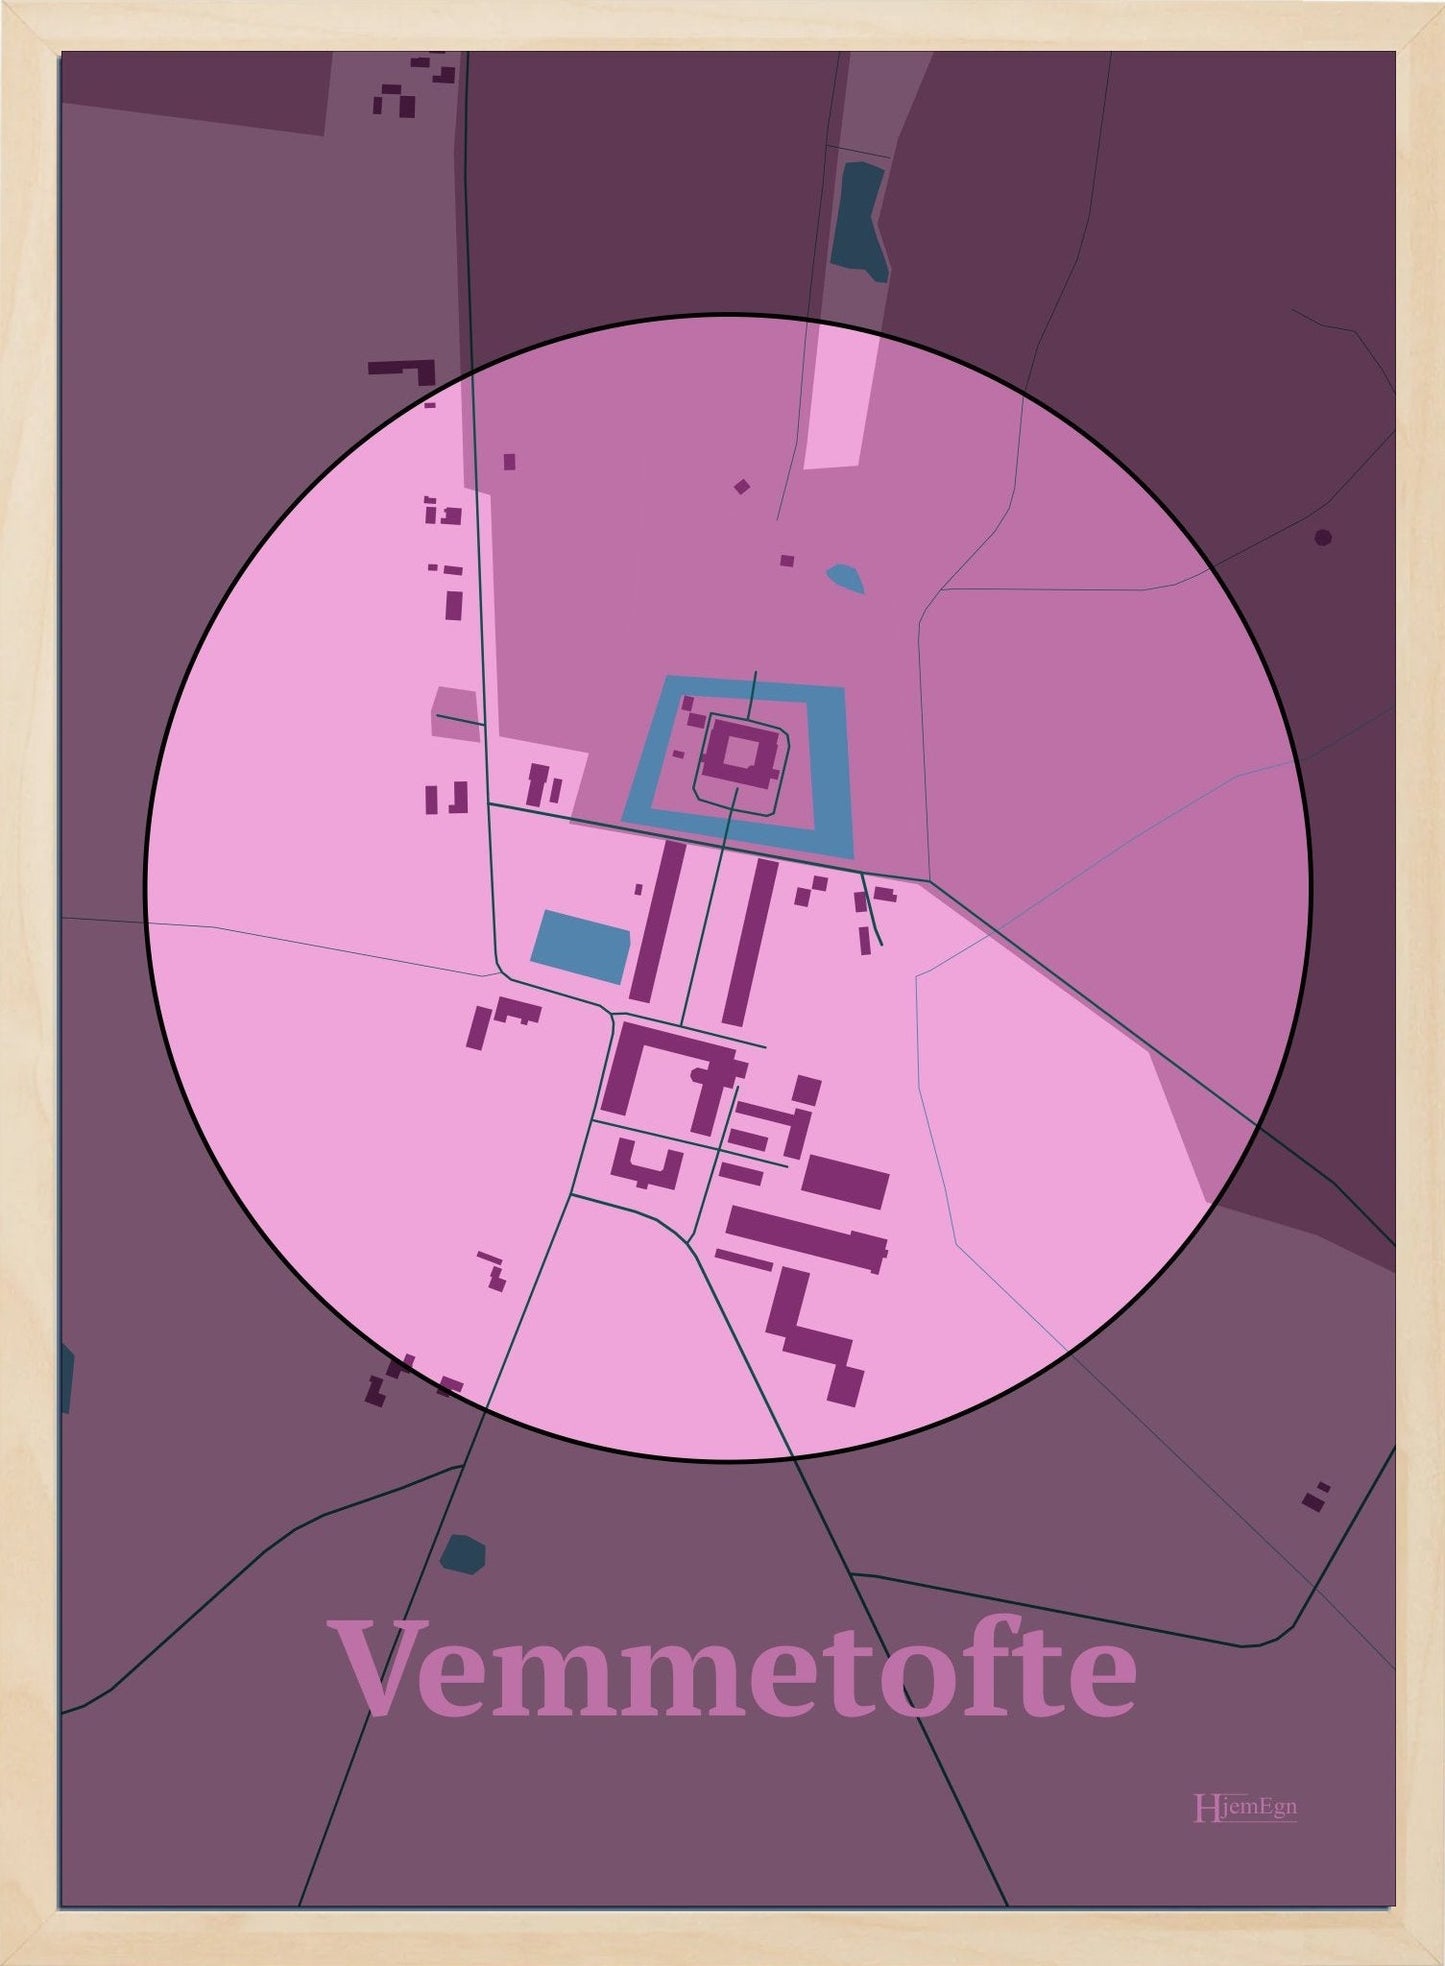 Vemmetofte plakat i farve pastel rød og HjemEgn.dk design centrum. Design bykort for Vemmetofte